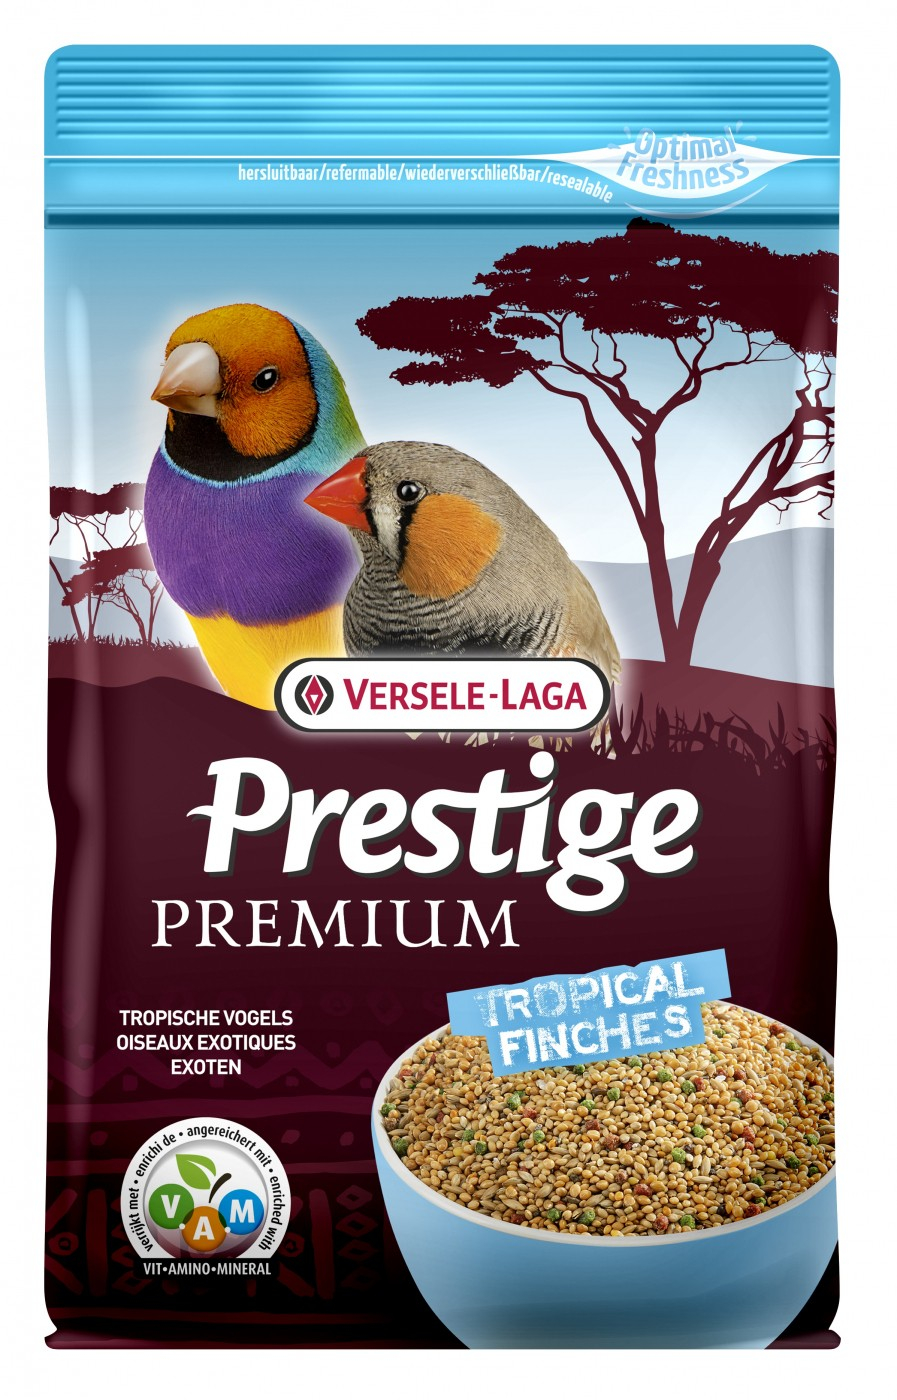 Versele Laga Premium Prestige Exotische Vögel